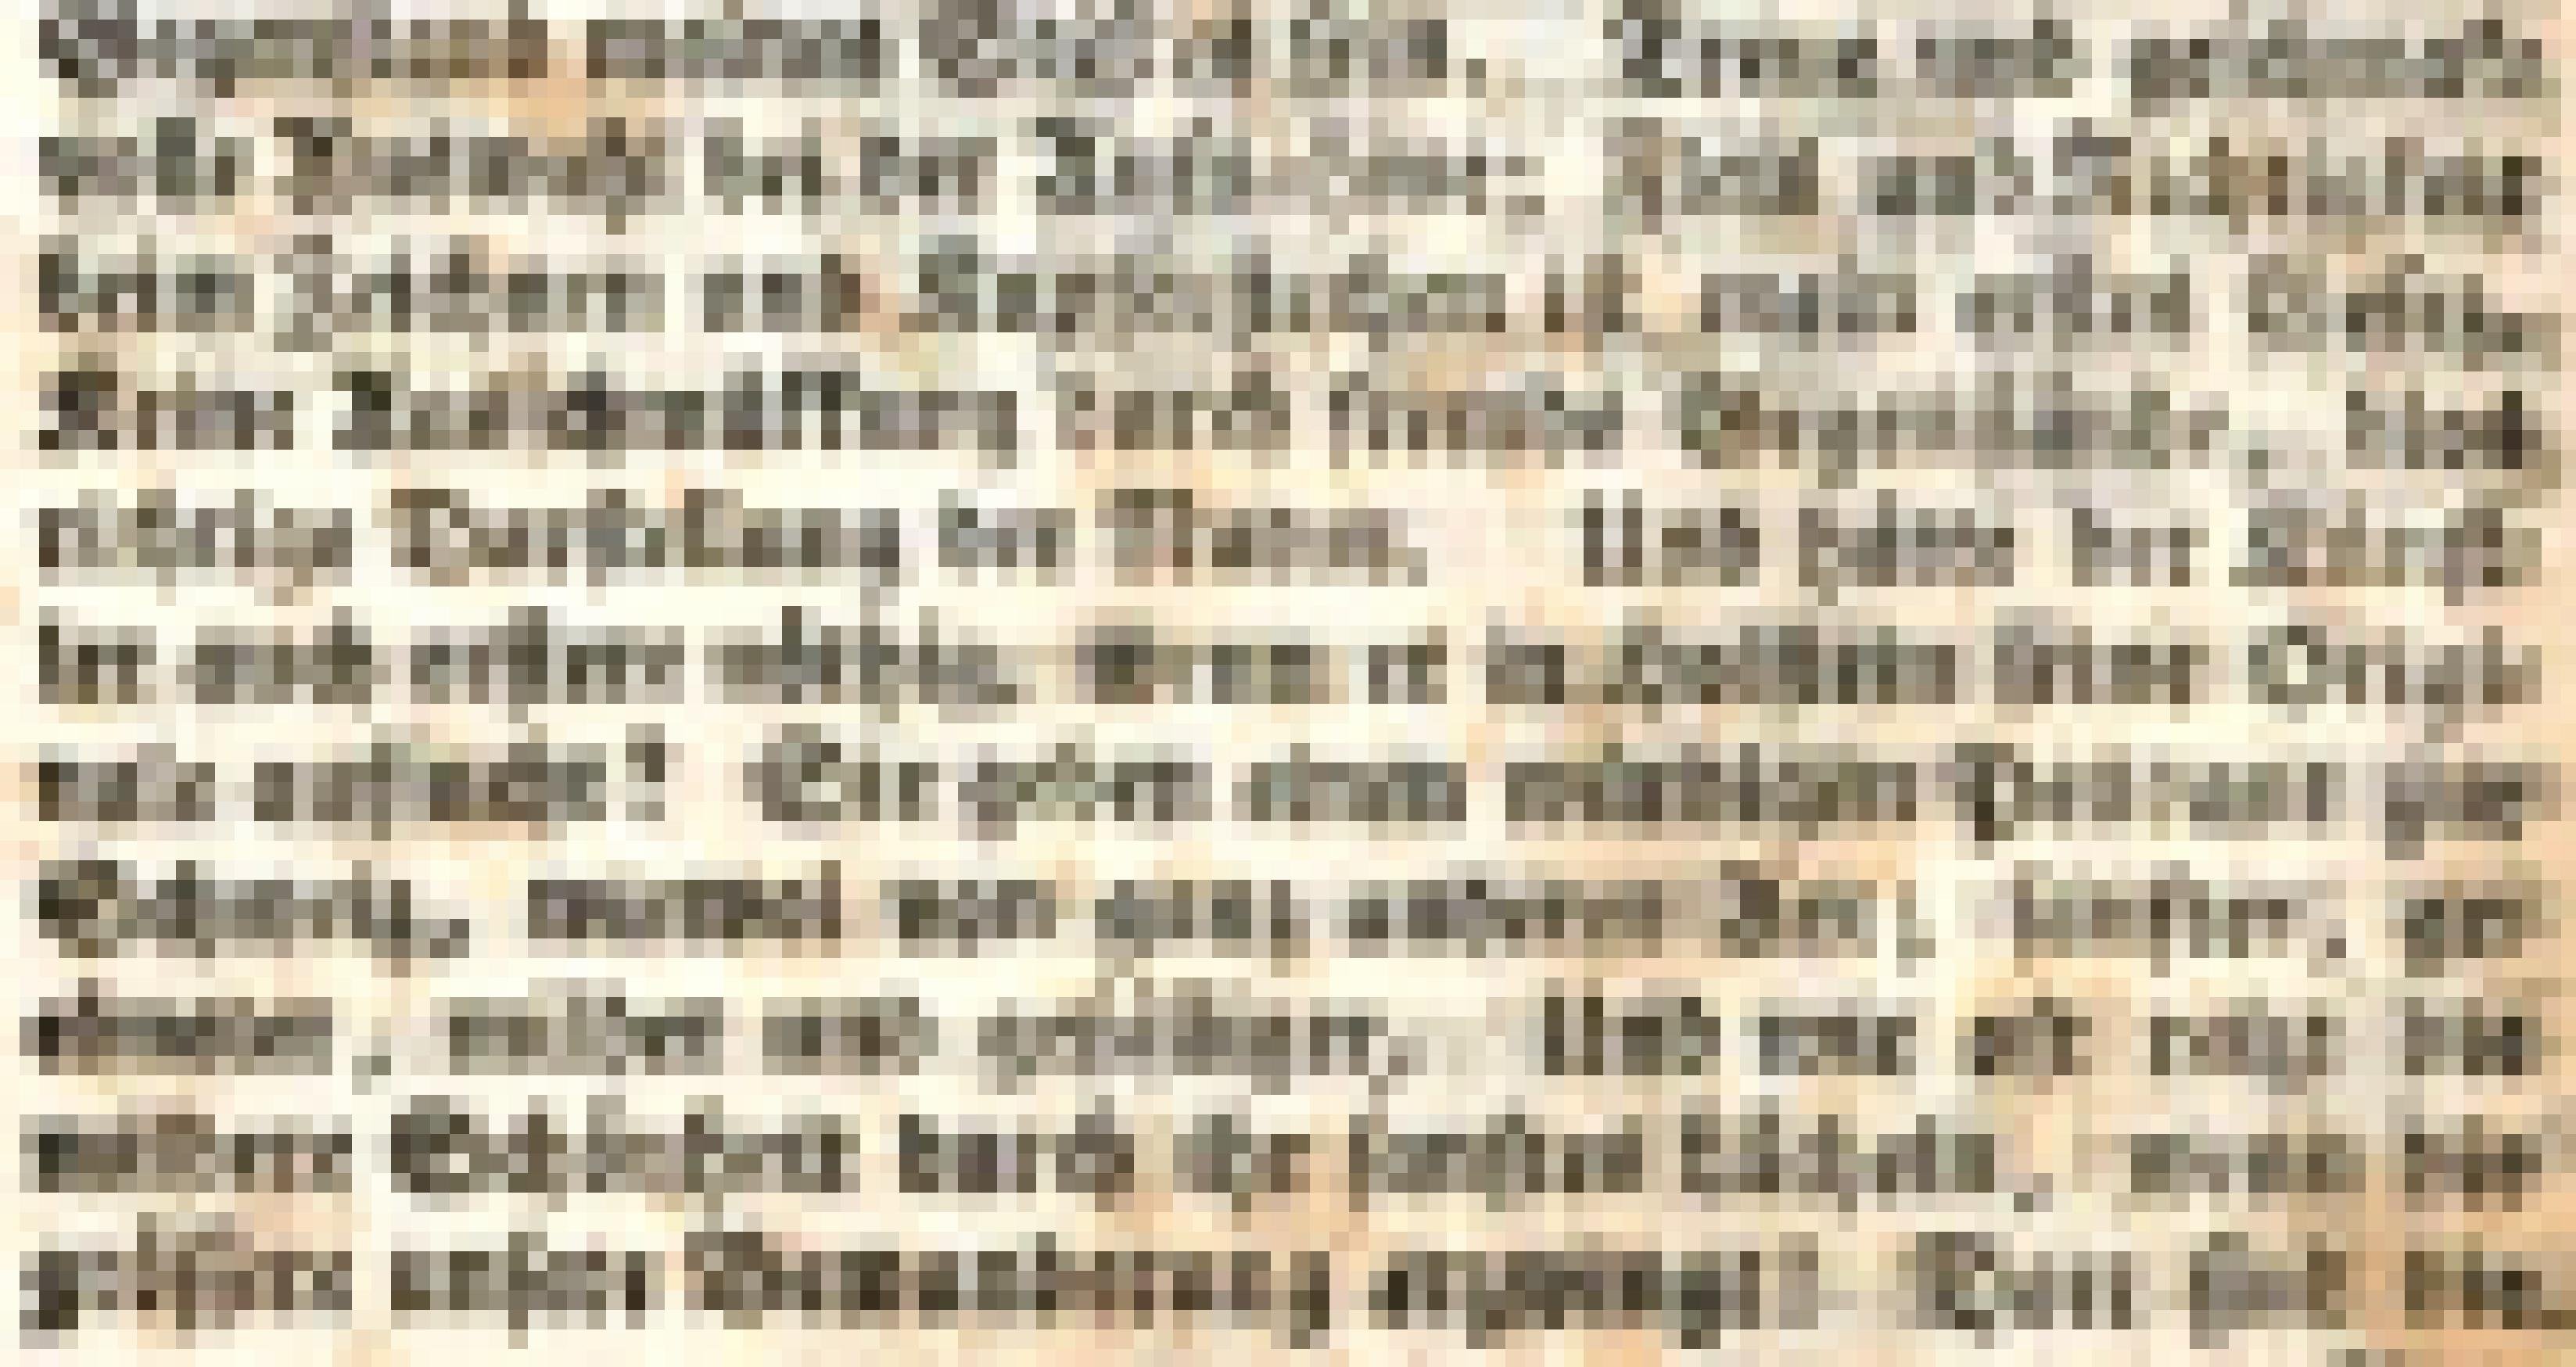 Ausschnitt einer altdeutsch bedruckten Textseite.